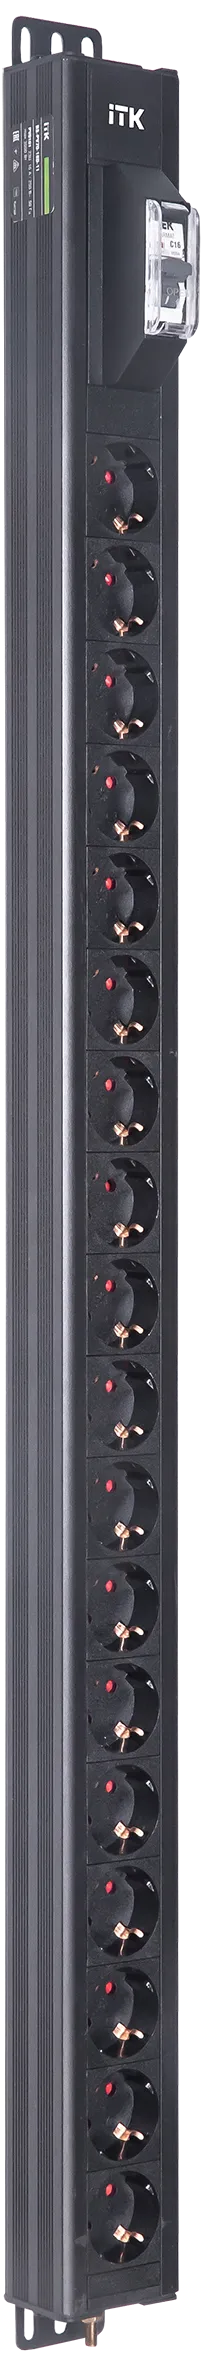 Вертикальный однотипный блок распределения питания PDU ITK включает в себя 18 розеток Schuko. PDU ITK изготавливается из высококачественных термостойких материалов и пластмасс, оснащается разъемом C20 для подключения кабеля необходимой длины. Шнур питания не входит в комплект. PDU ITK прекрасно справляется с задачей по электроснабжению сетевого оборудования в шкафах и стойках, а также с требованием защиты от токов короткого замыкания и перенапряжения. PDU ITK соответствует российским и международным стандартам качества и устанавливается с помощью кронштейнов, при этом положение кронштейнов можно менять, либо безынструментальным методом при помощи монтажных штифтов.